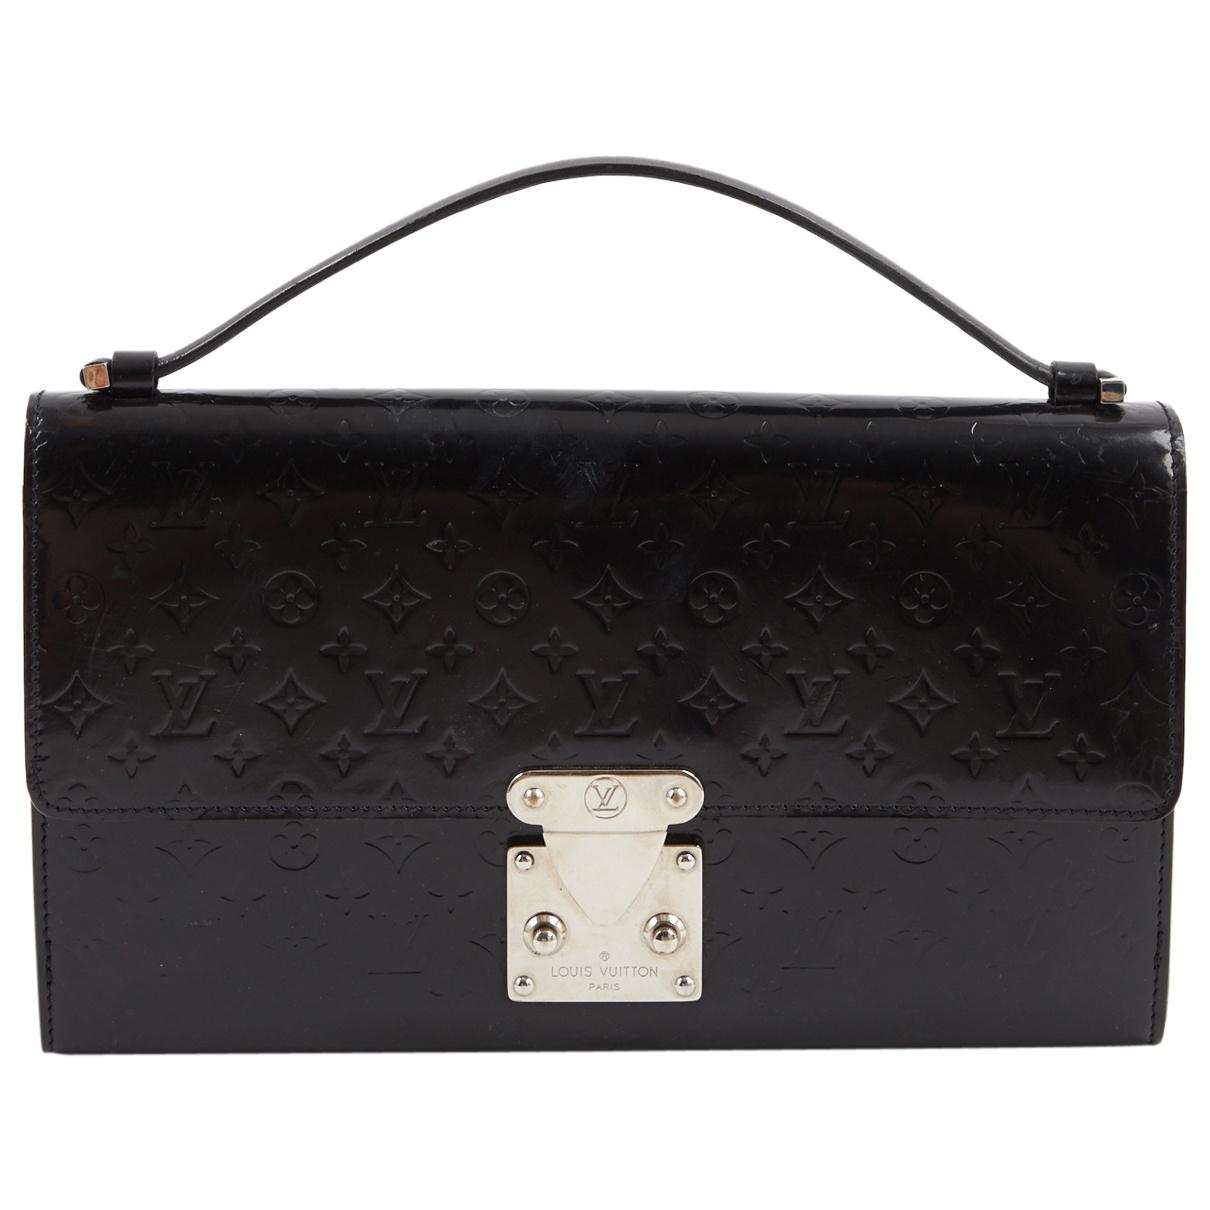 Louis Vuitton Vintage Black Patent Leather Clutch Bag - Lyst